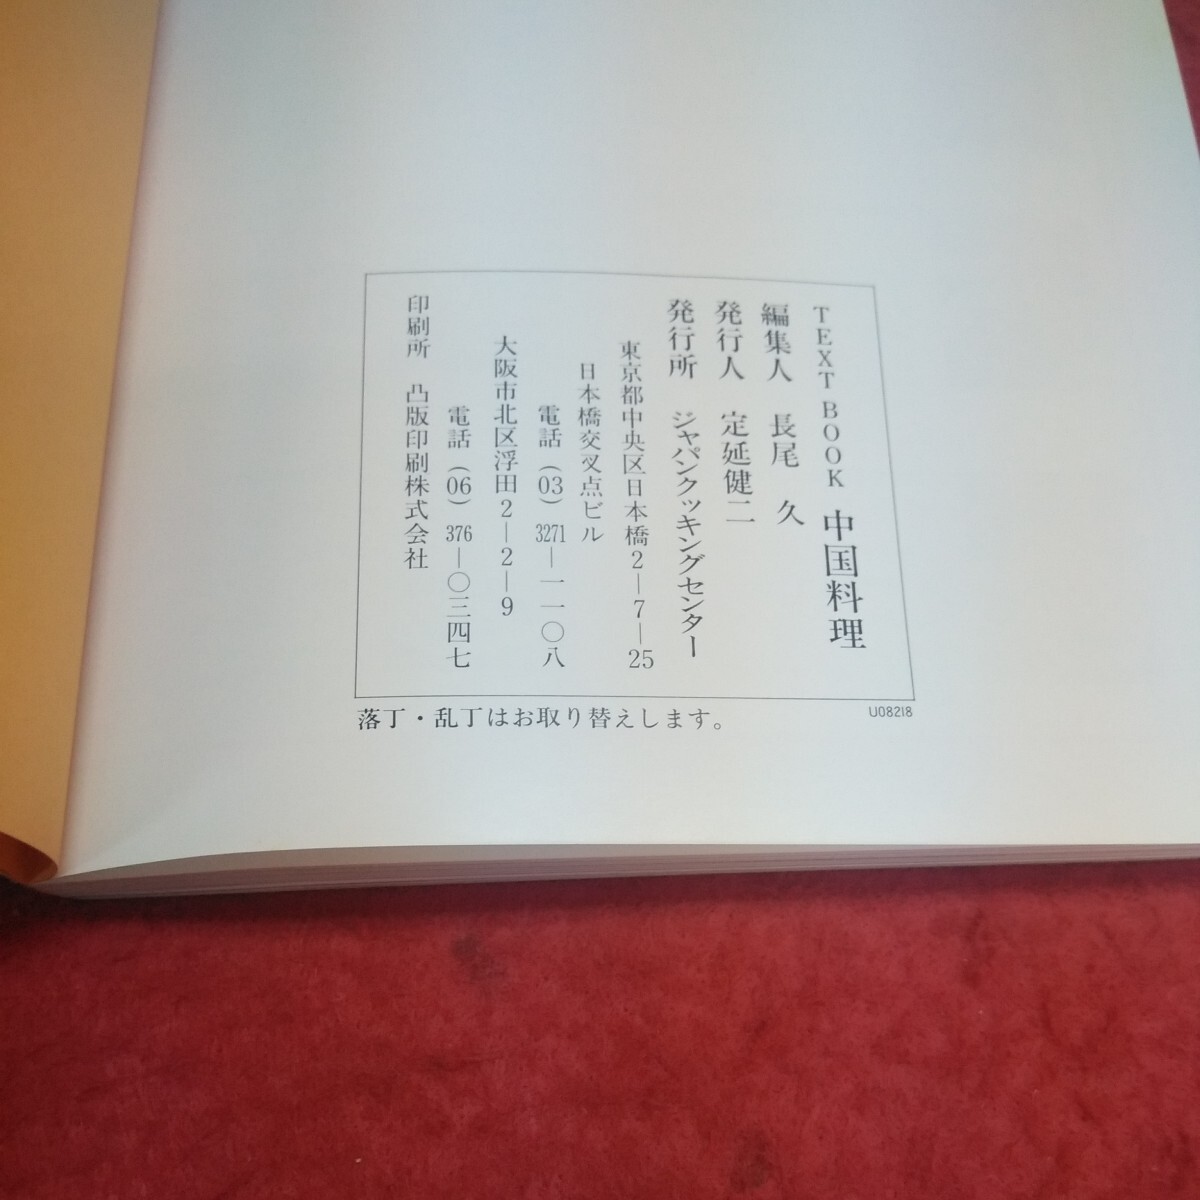 d-605※14 TextBook中国料理 長尾久 ジャパンクッキングセンター テキスト 料理 中華料理 レシピ集_画像5